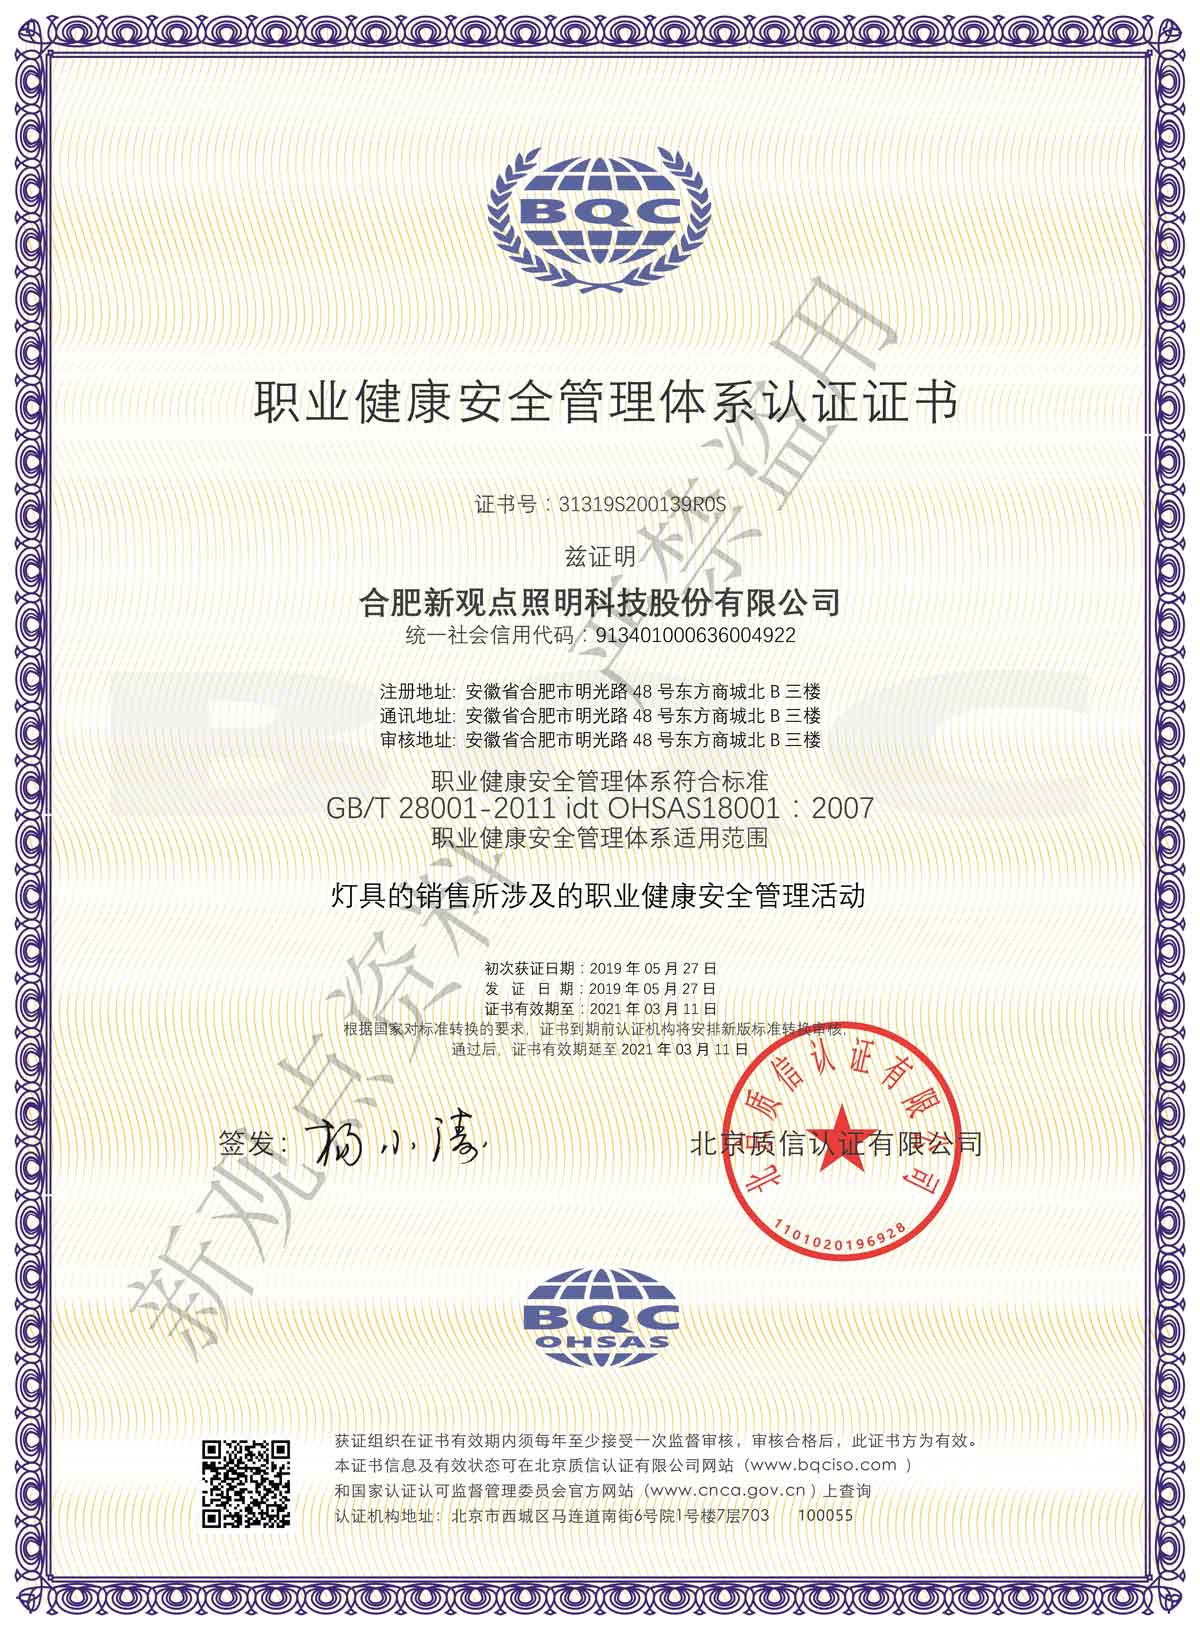 3-3职业健康安全管理体系认证-中文证书.jpg